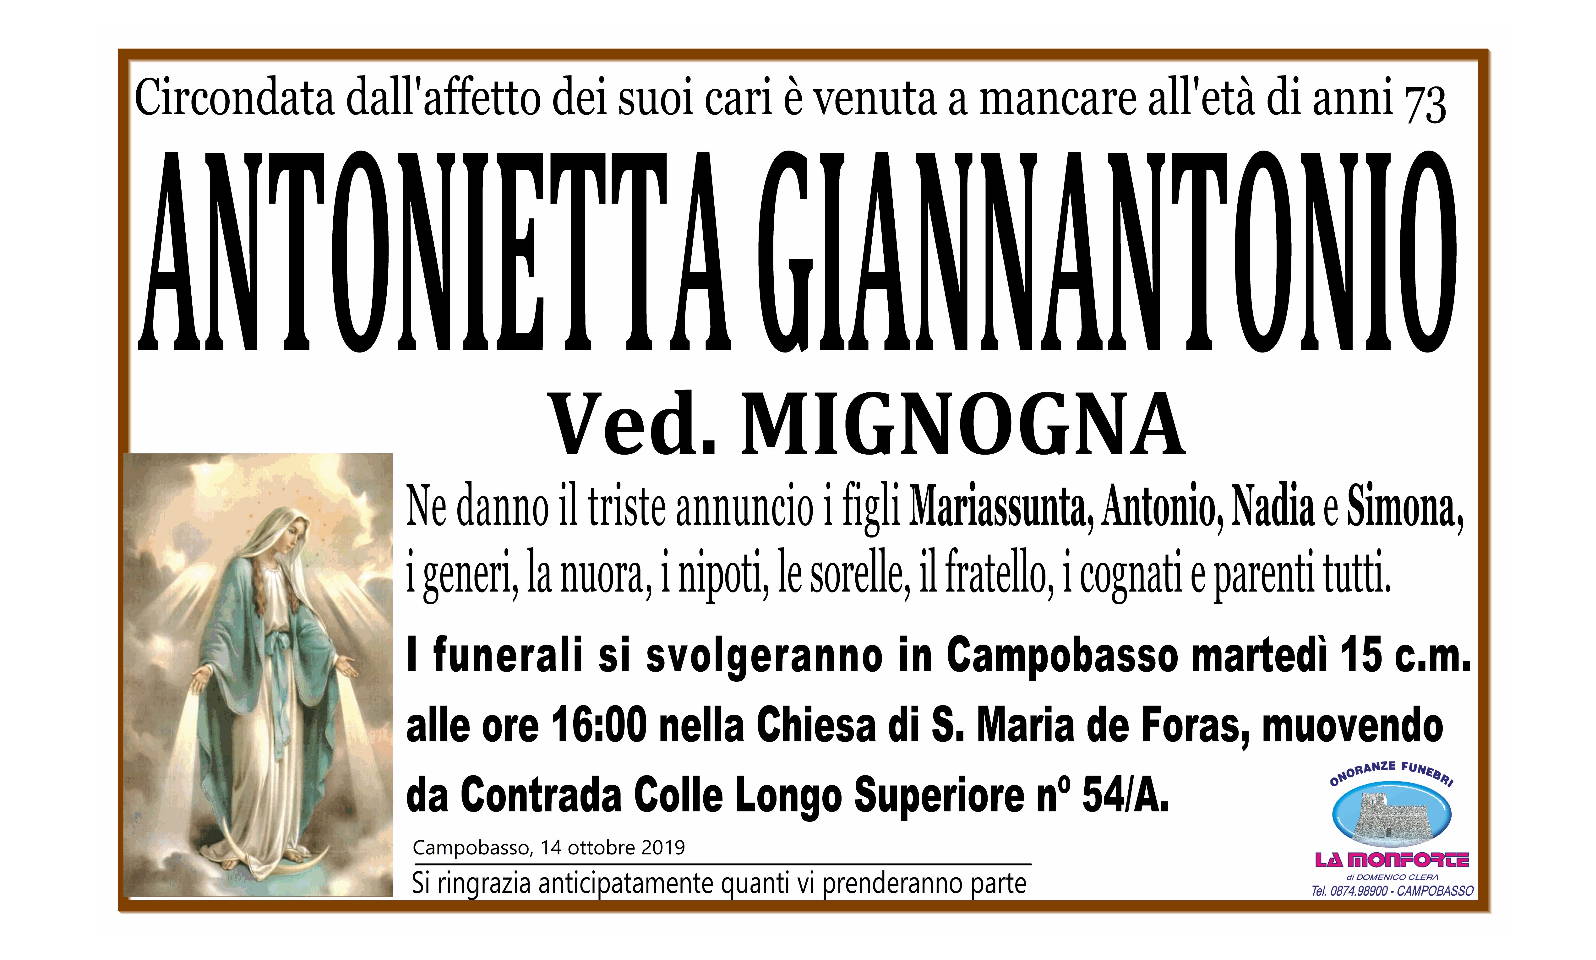 Antonietta Giannantonio